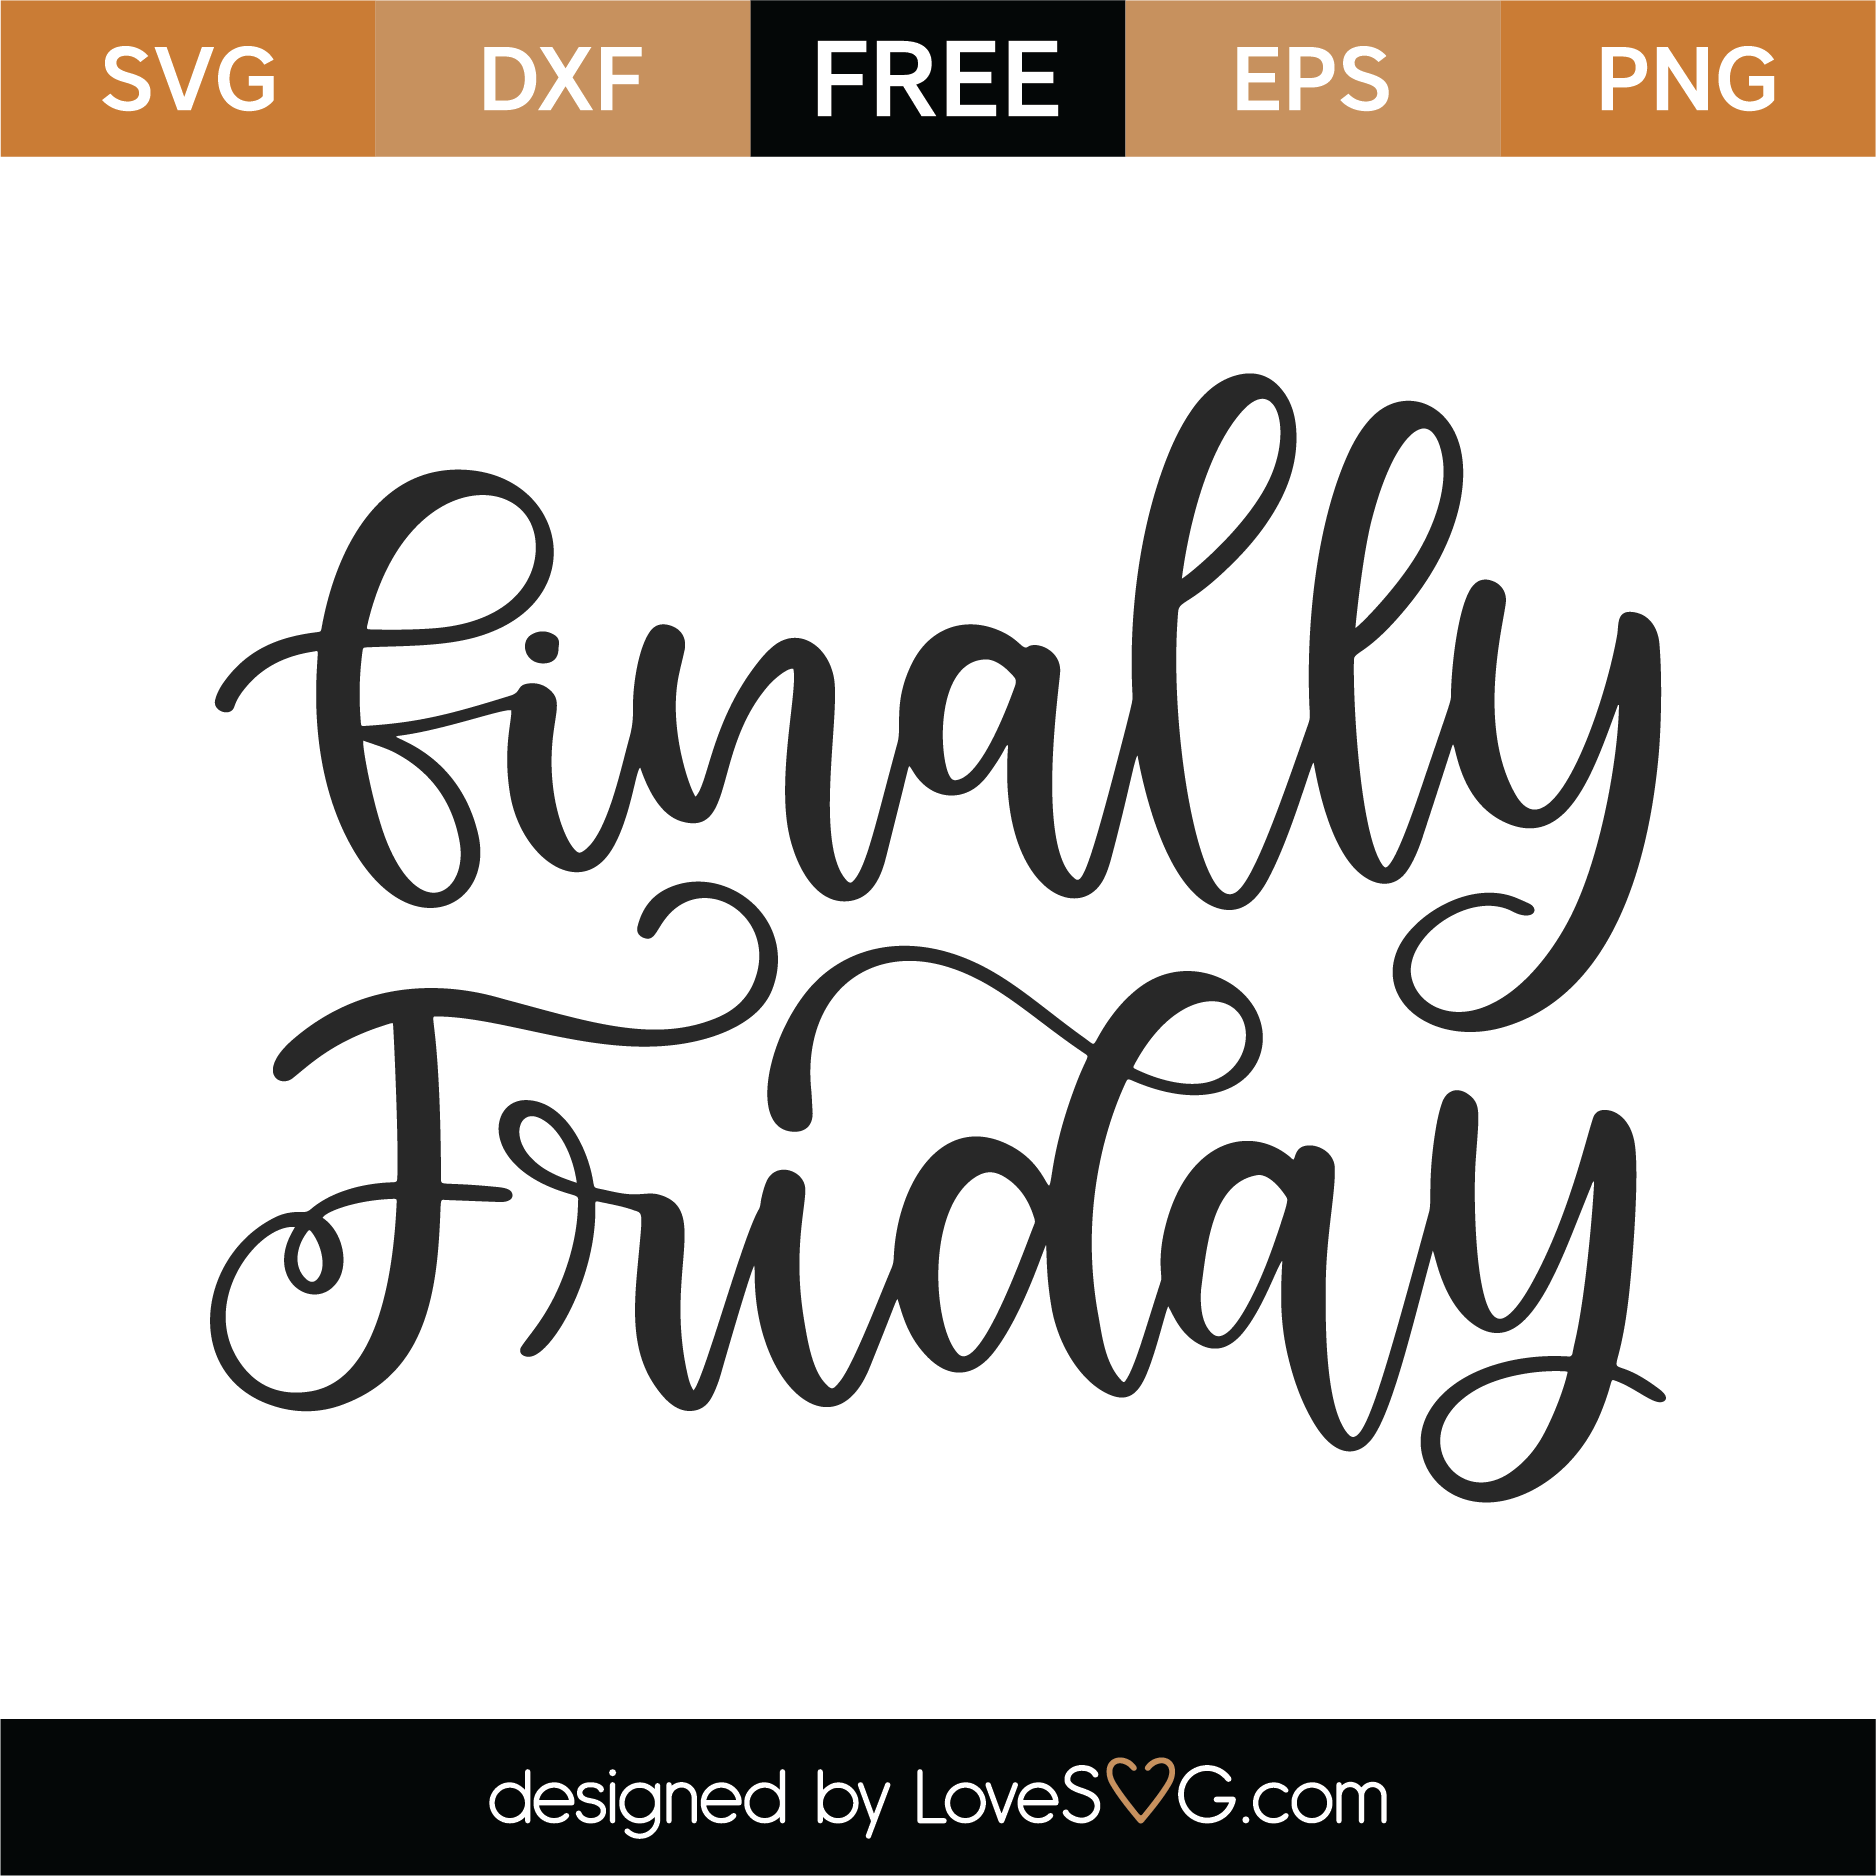 Free Finally Friday SVG Cut File | Lovesvg.com